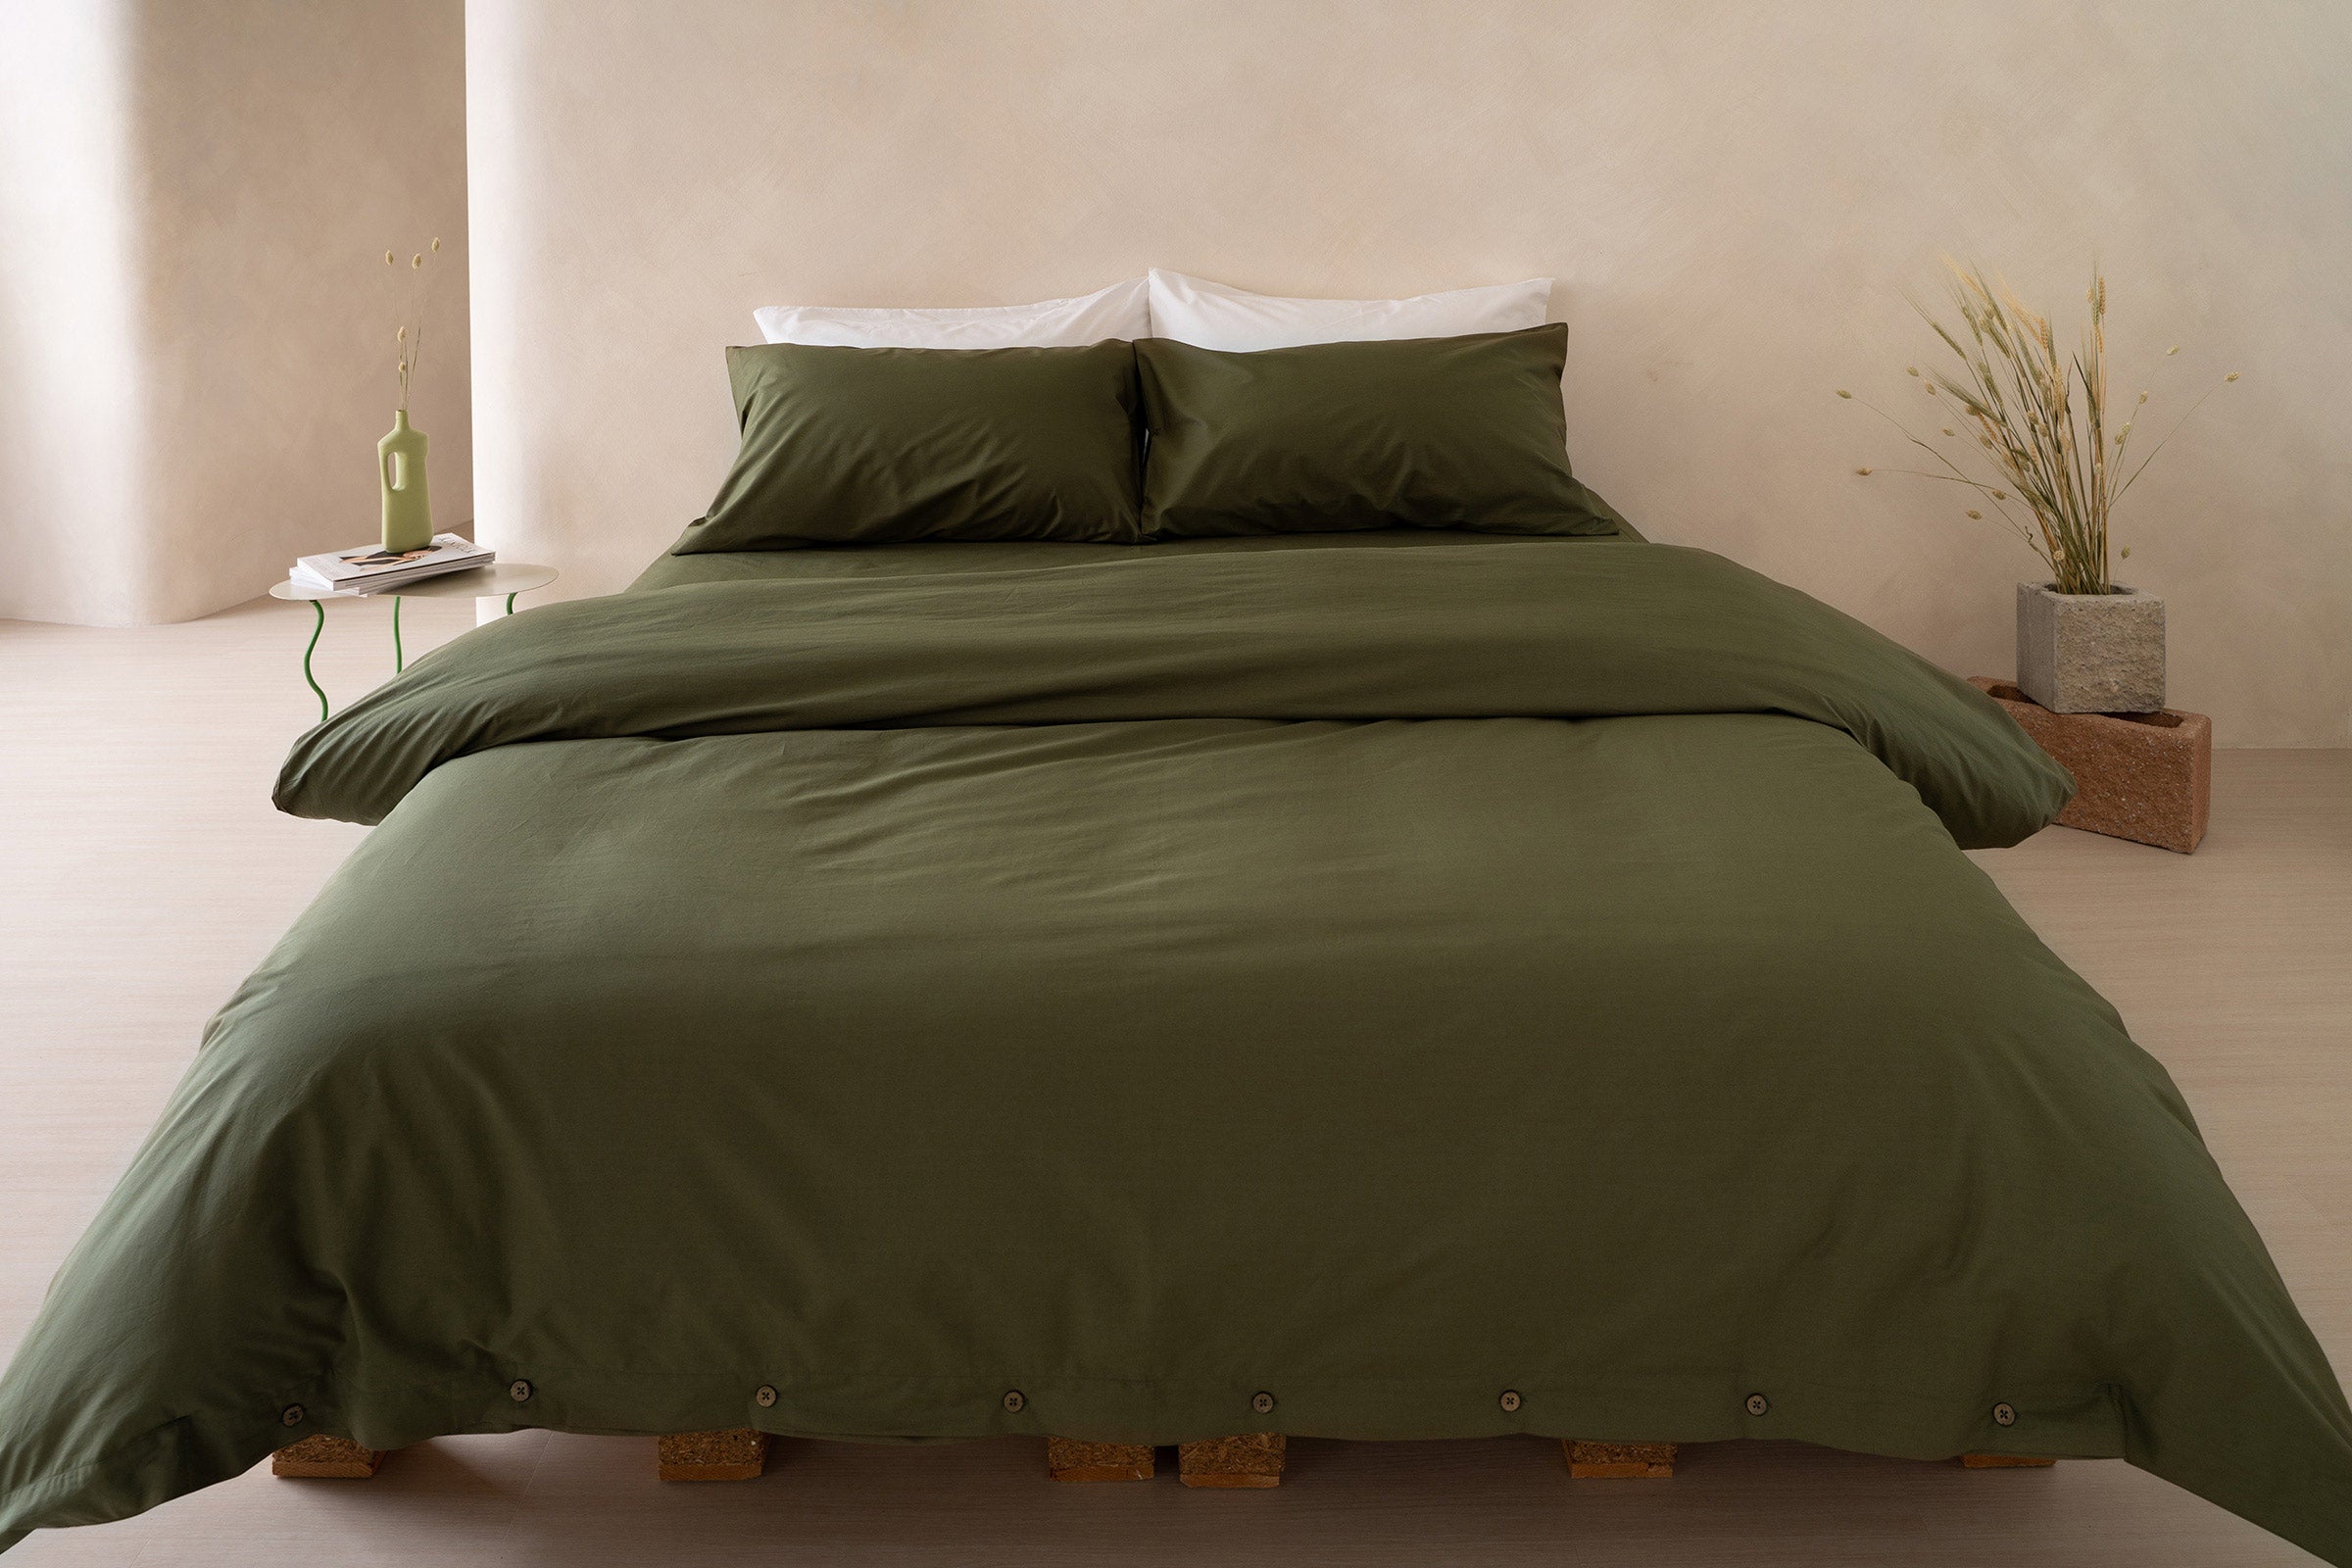 crisp-olive-fitted-sheet-duvet-cover-pillowcase-pair-white-pillowcase-pair-by-sojao.jpg